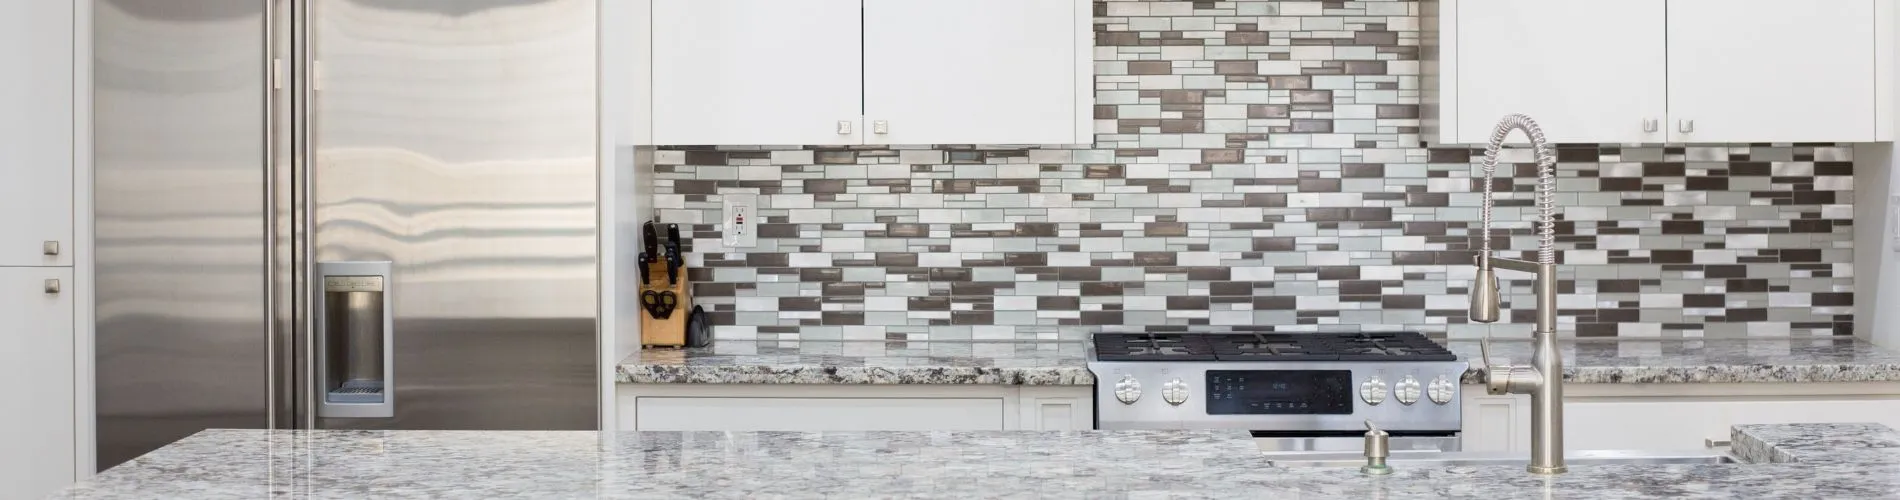 backsplash tile in kitchen